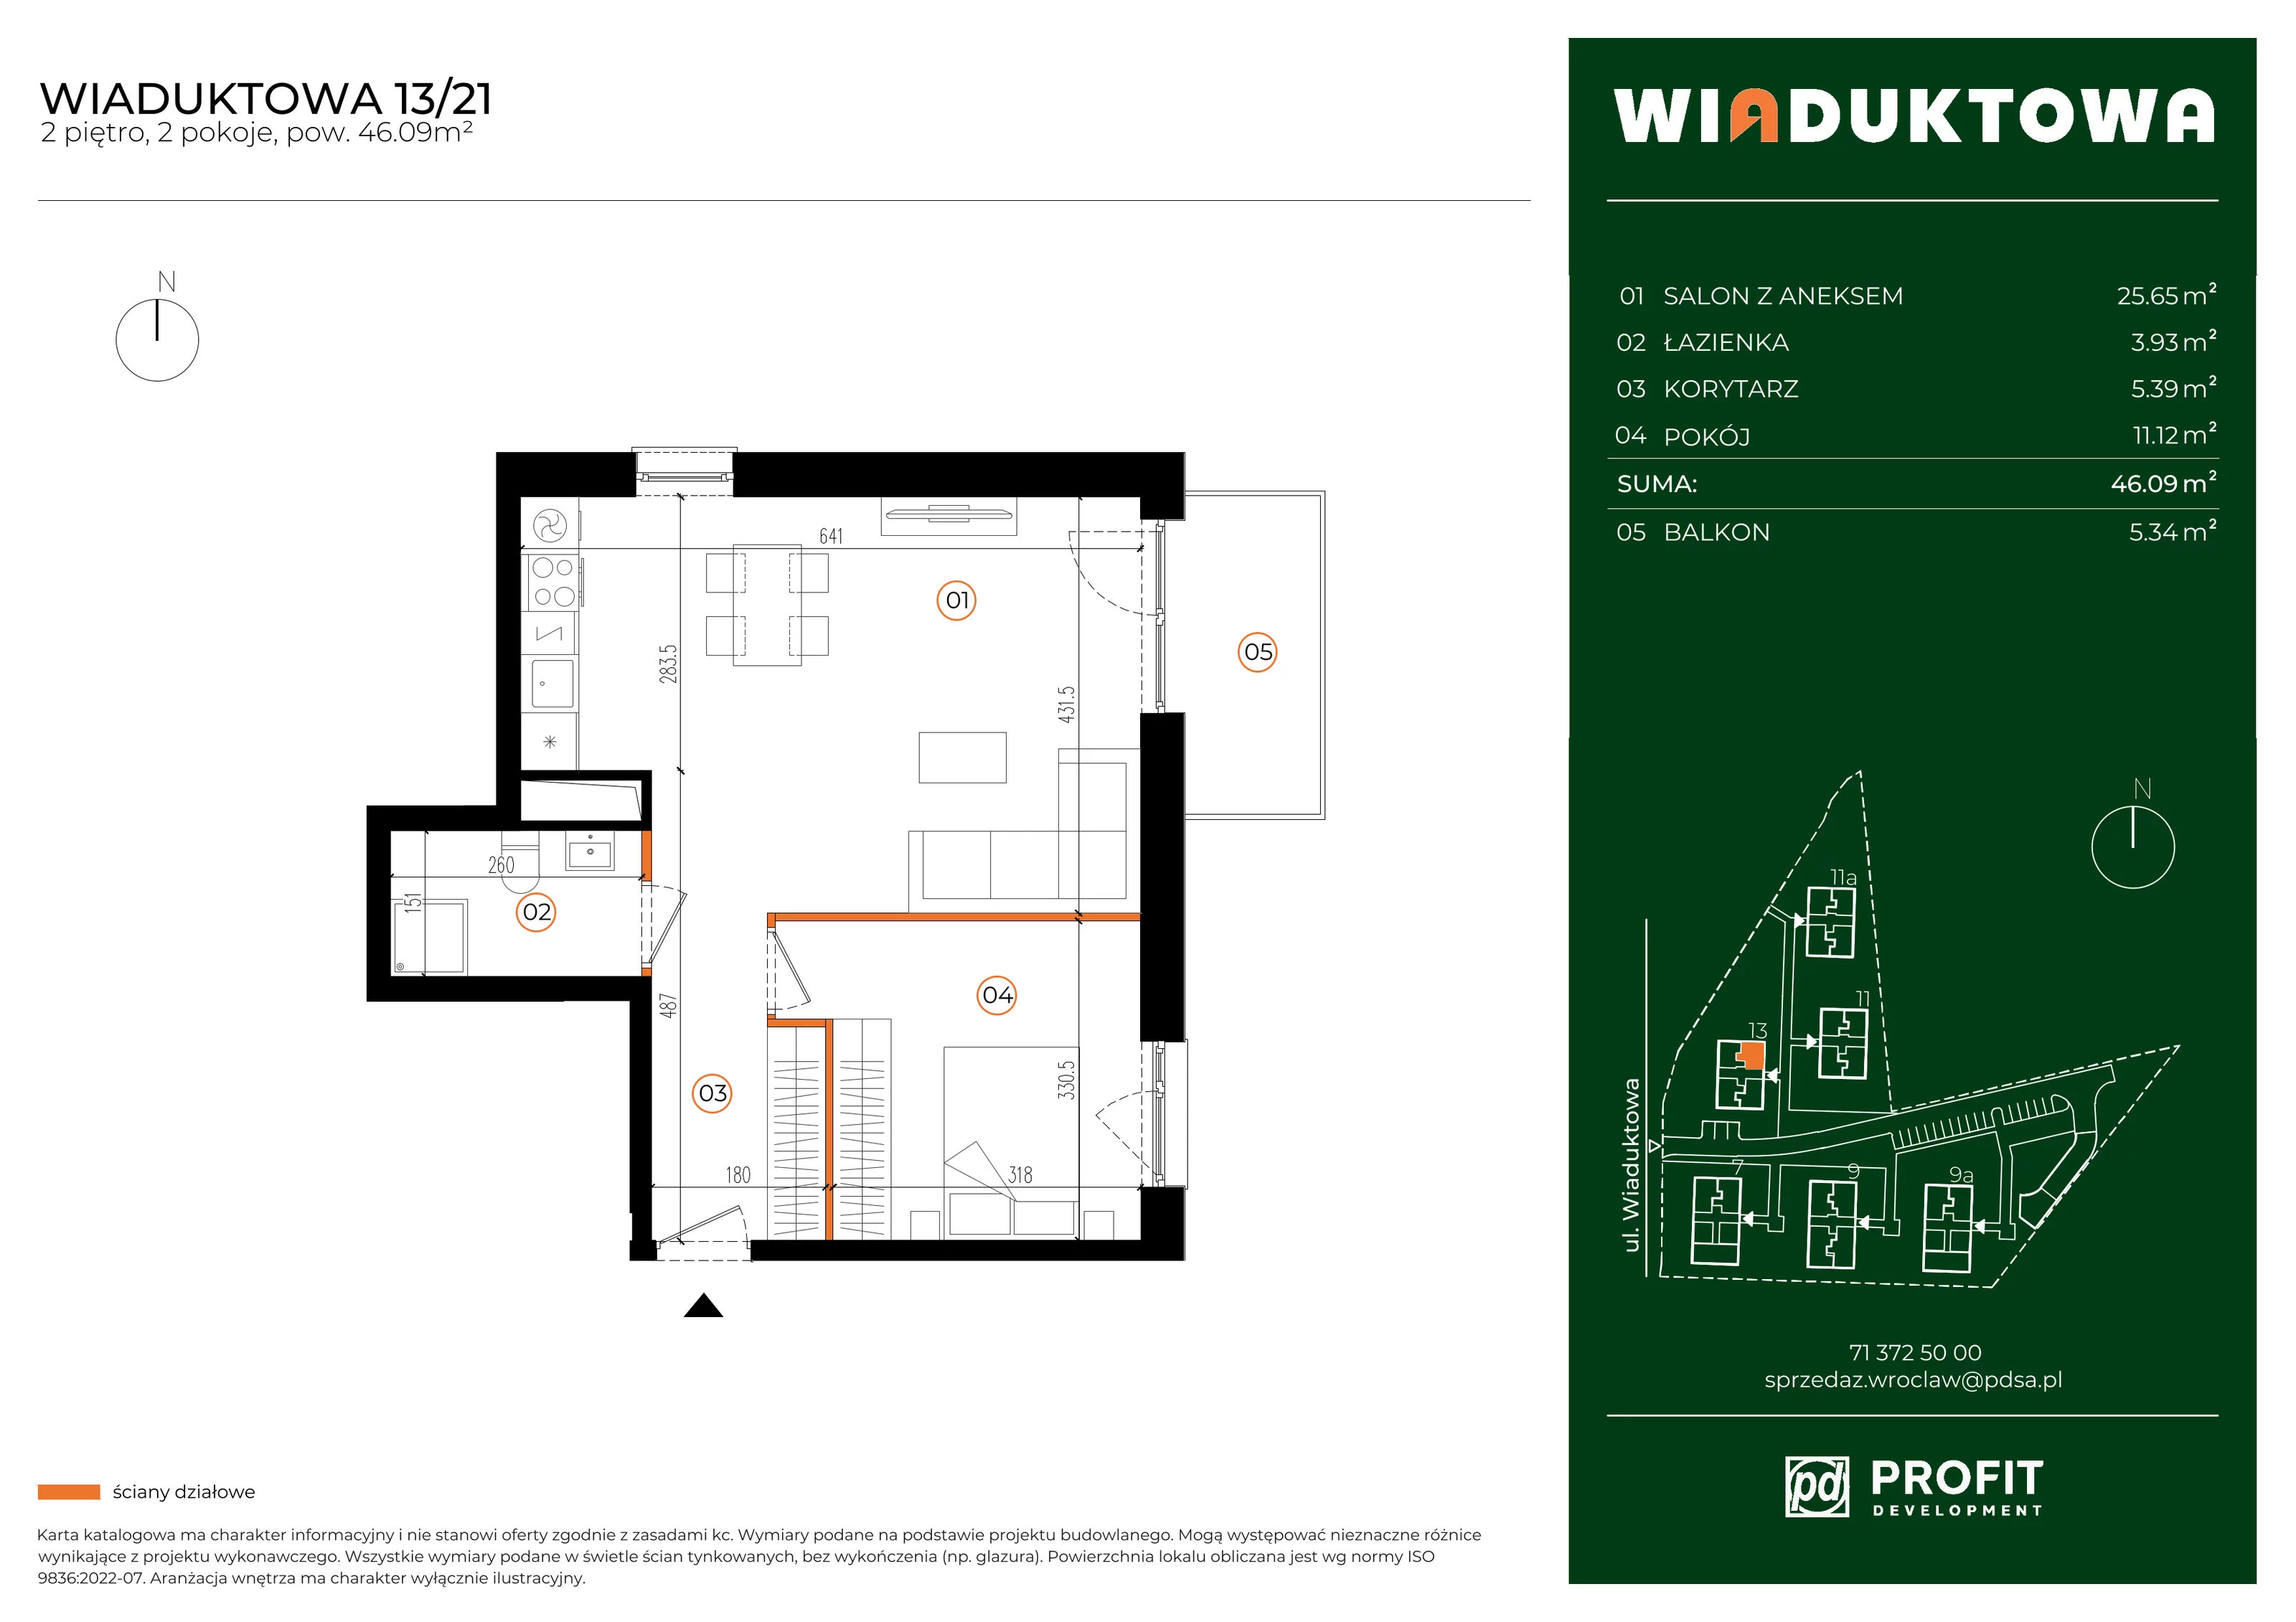 Mieszkanie 46,09 m², piętro 2, oferta nr WI/13/21, Wiaduktowa, Wrocław, Krzyki-Partynice, Krzyki, ul. Wiaduktowa